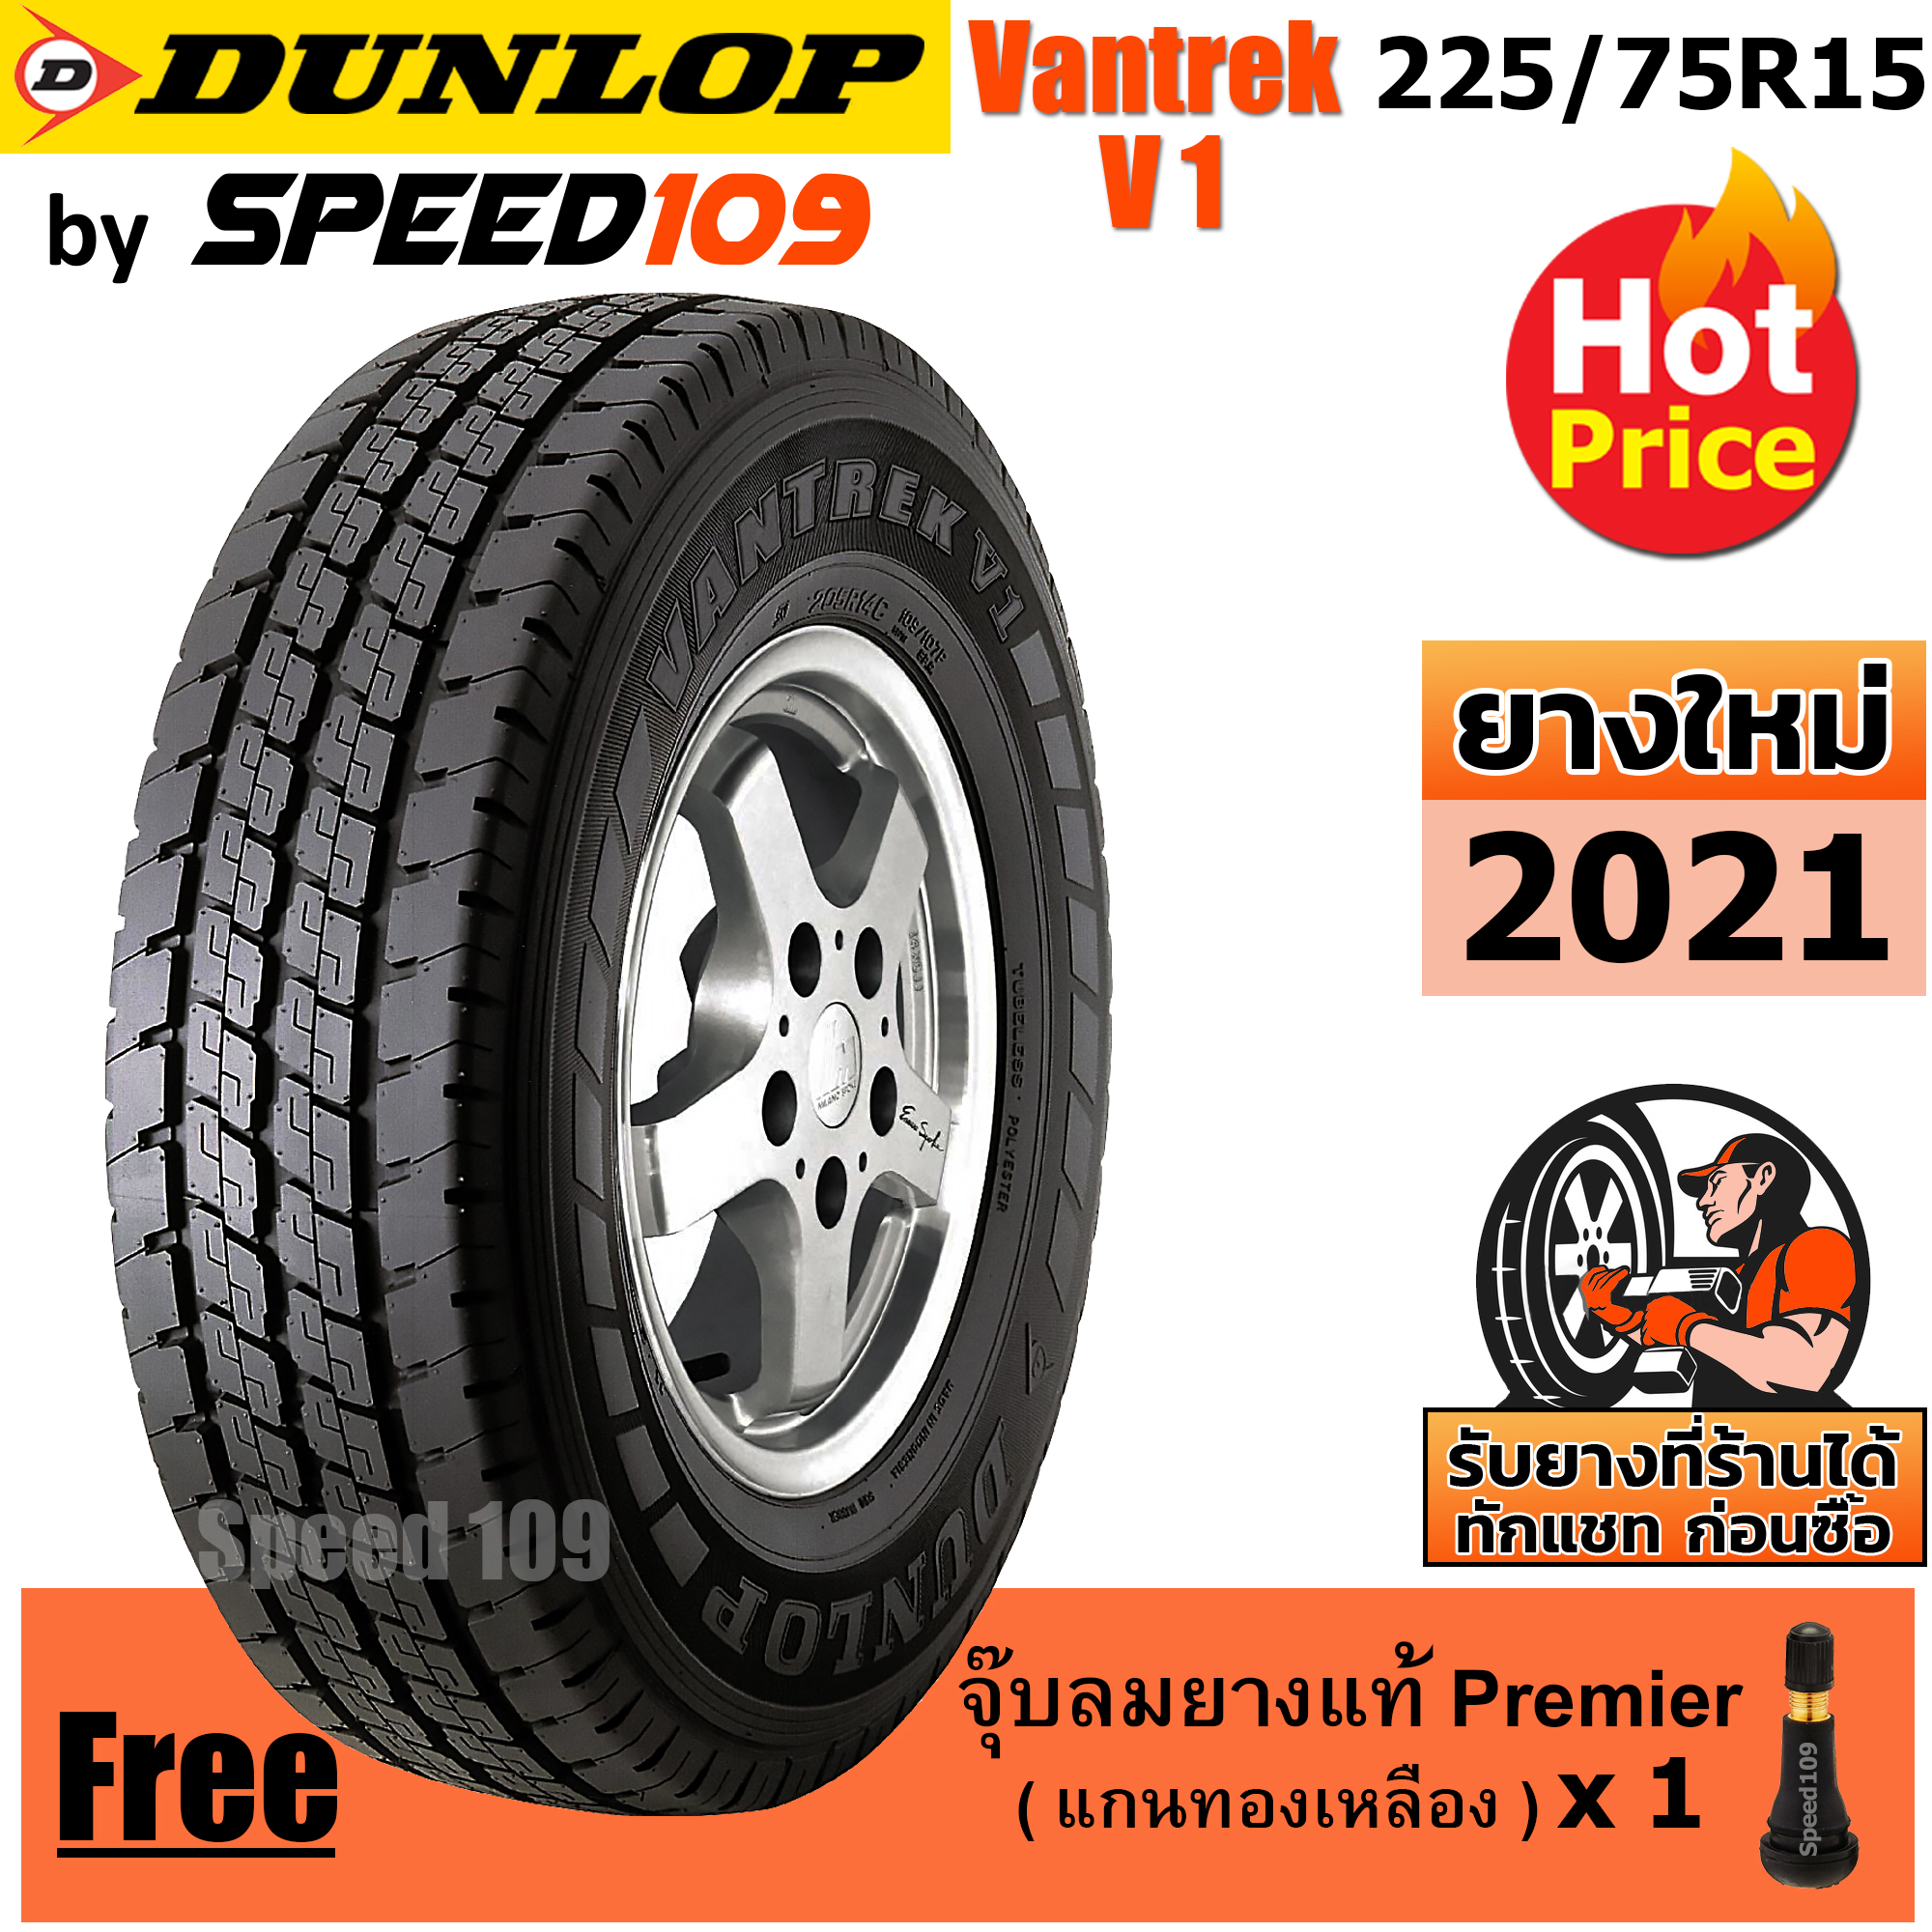 DUNLOP ยางรถยนต์ ขอบ 15 ขนาด 225/75R15 รุ่น Vantrek V1 - 1 เส้น (ปี 2021)